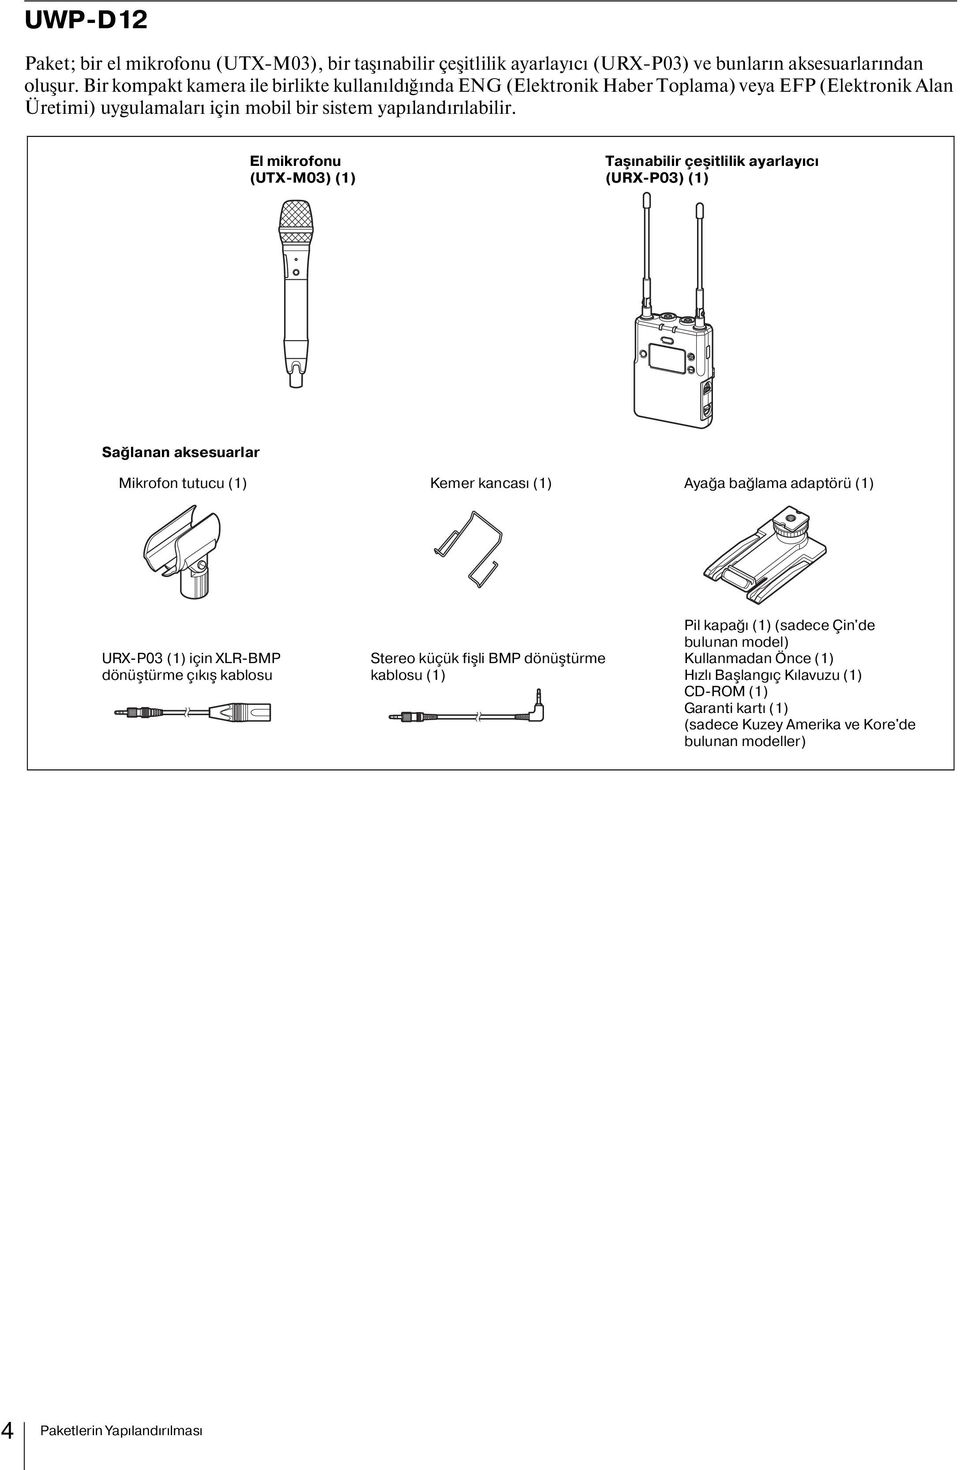 El mikrofonu (UTX-M03) (1) Taşınabilir çeşitlilik ayarlayıcı (URX-P03) (1) Sağlanan aksesuarlar Mikrofon tutucu (1) Kemer kancası (1) Ayağa bağlama adaptörü (1) URX-P03 (1) için XLR-BMP